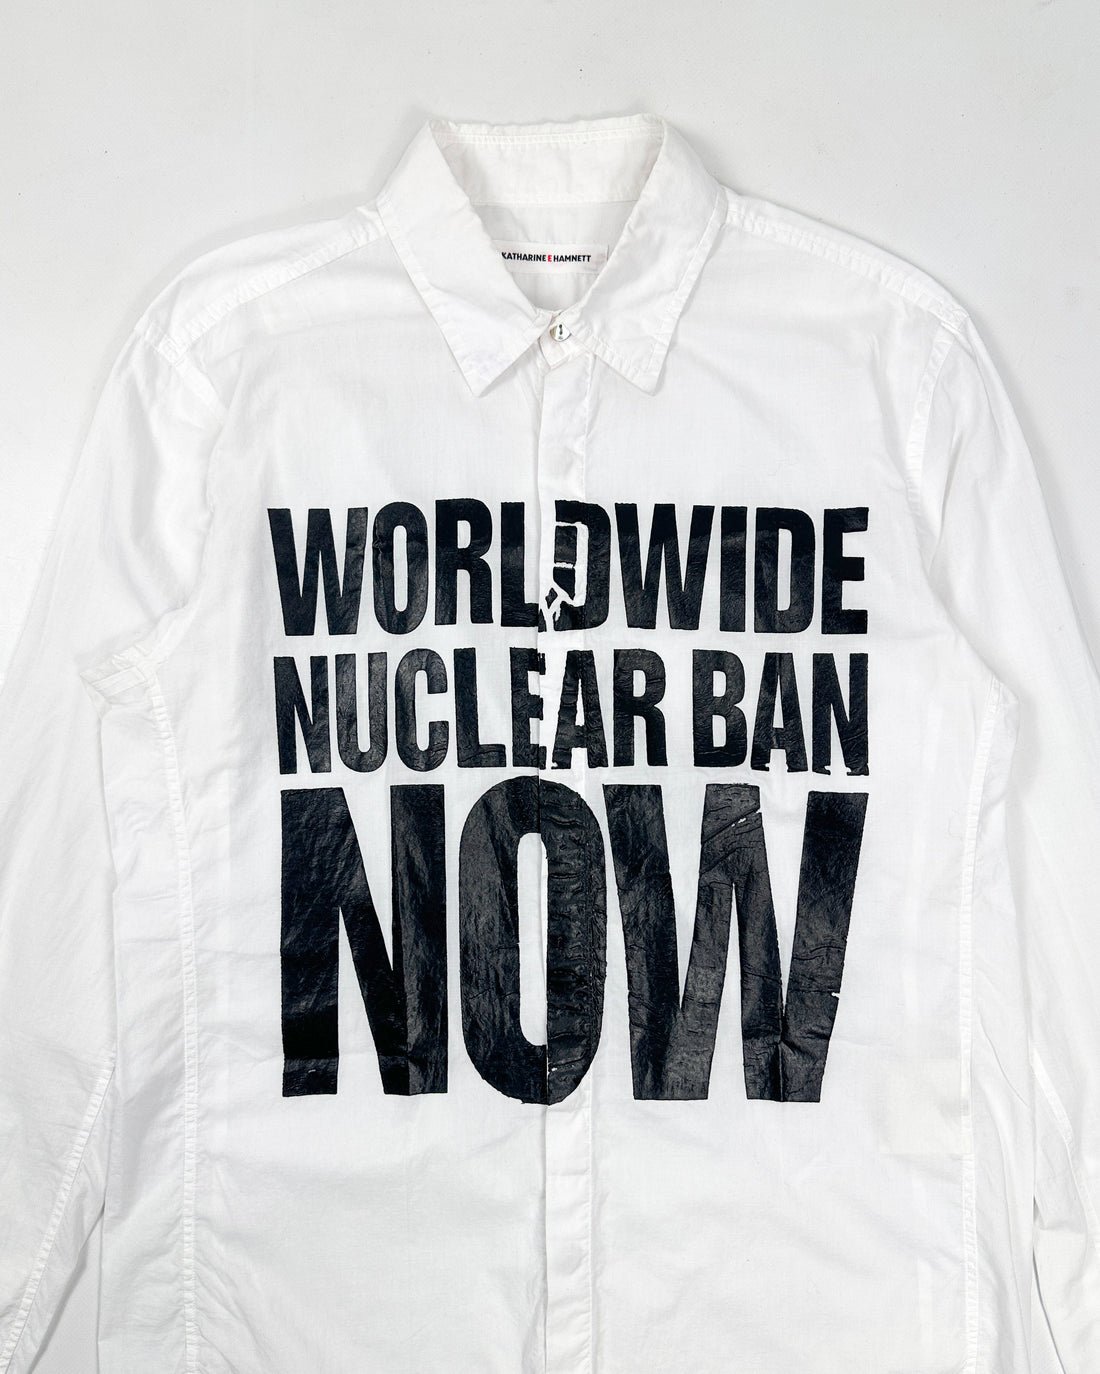 Katharine Hamnett "Nuclear Ban" White Printed Shirt 2000's